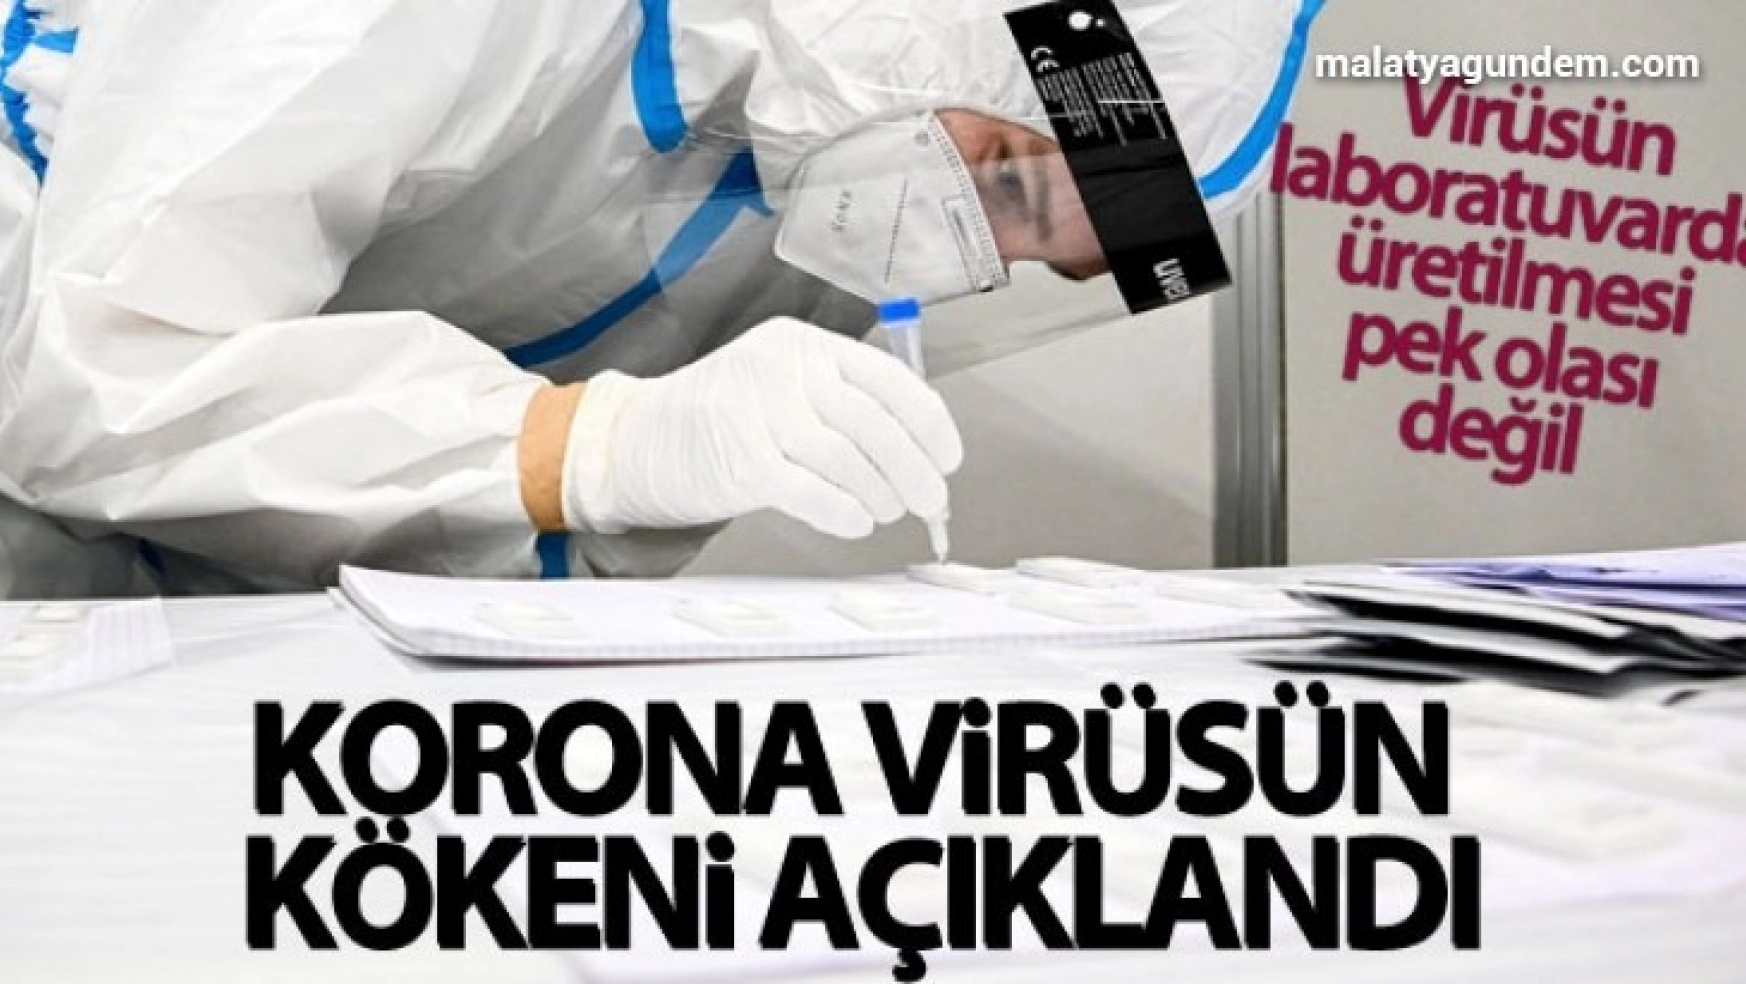 Dünya Sağlık Örgütü ekibi korona virüsün kökenini açıkladı